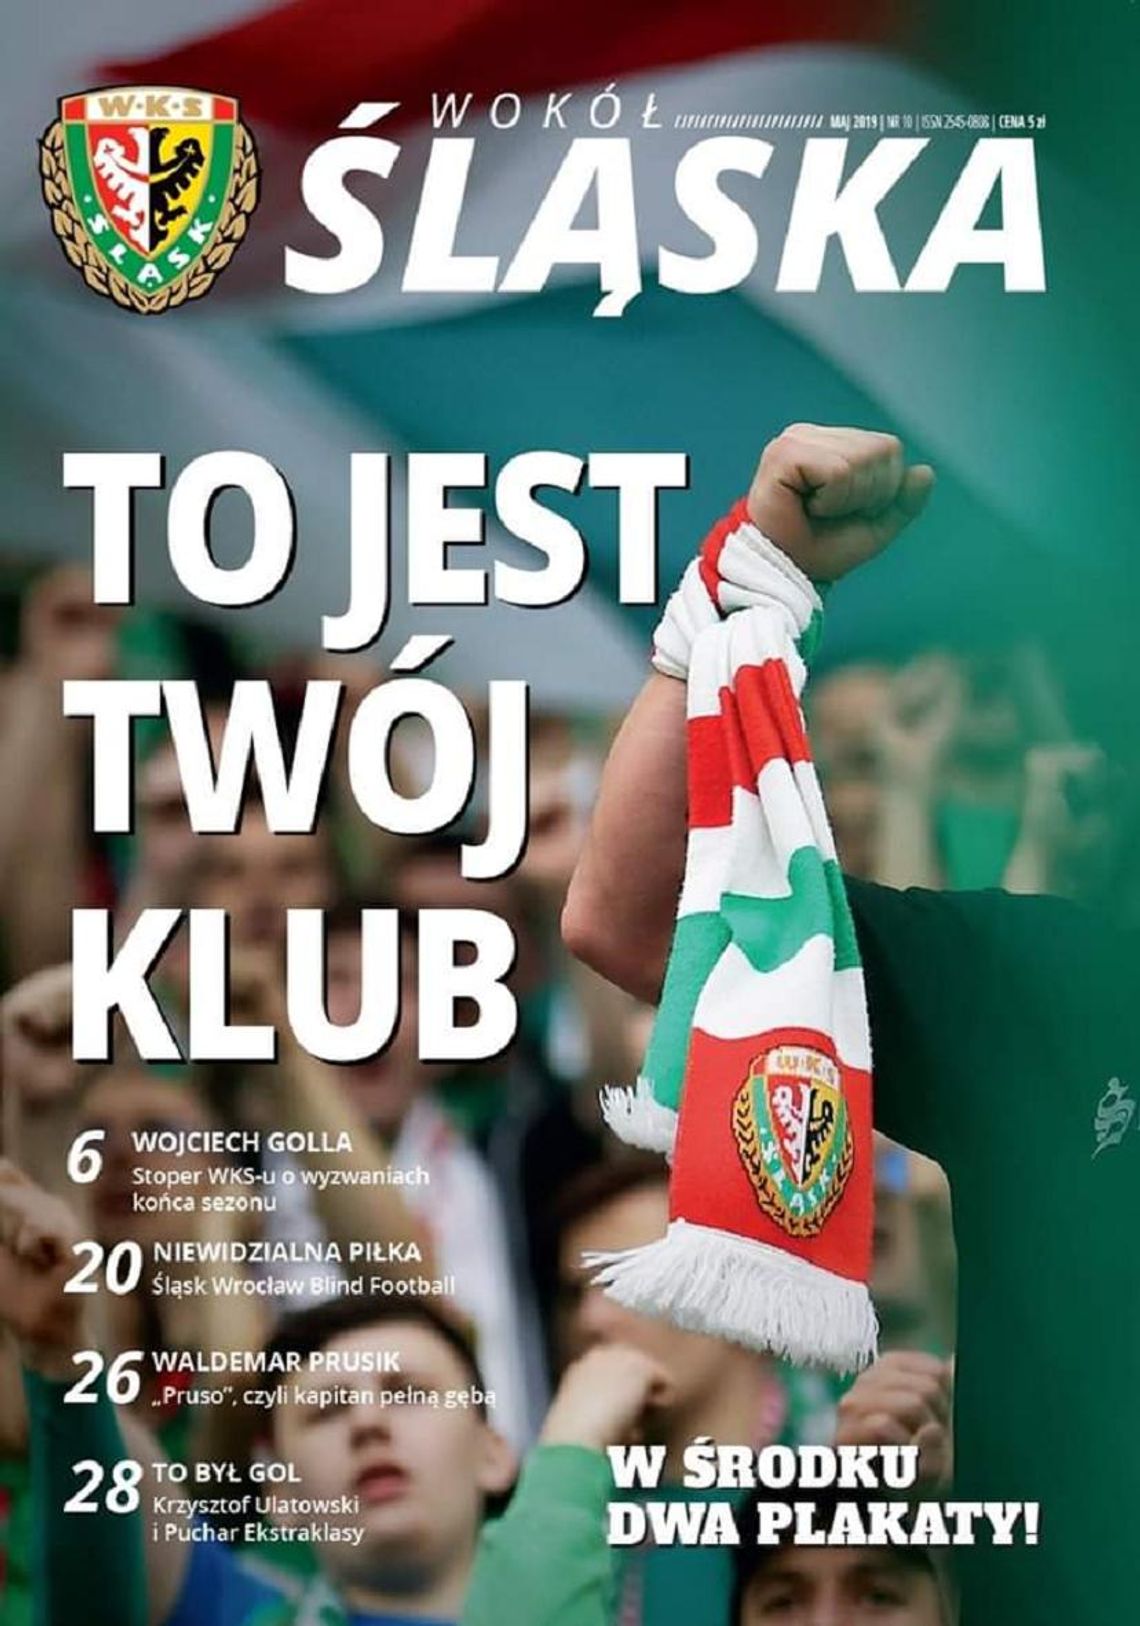 Rozdajemy bilety na mecz Śląska Wrocław z Arką Gdynia!